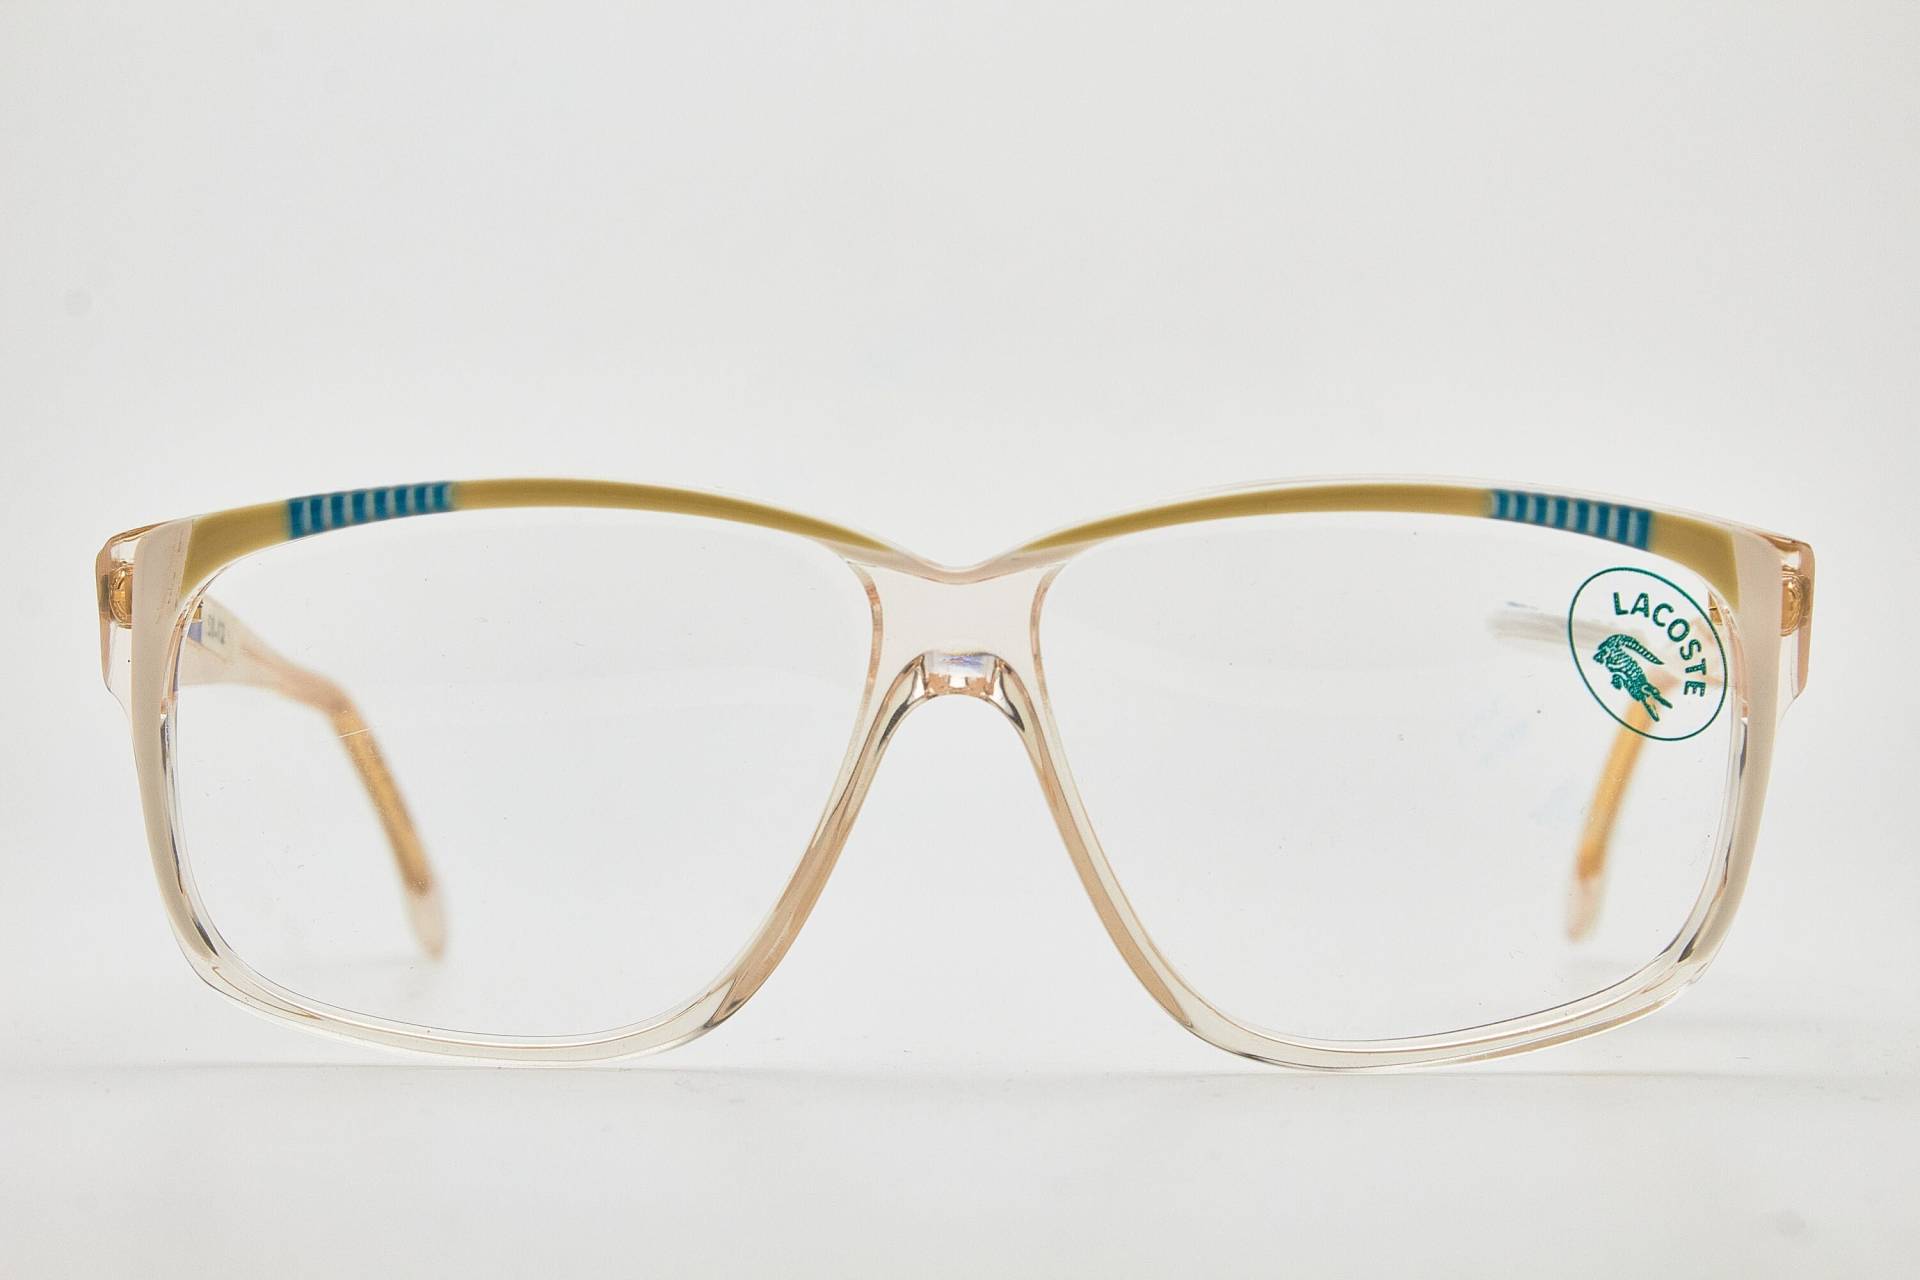 Lacoste Brille 803 Vintage Brillen 1980Er Jahre Kunststoff Oversize Sonnenbrille Schmetterlingsbrille Damenbrillen Schmetterlingsbrillen von VintageGlassesVault